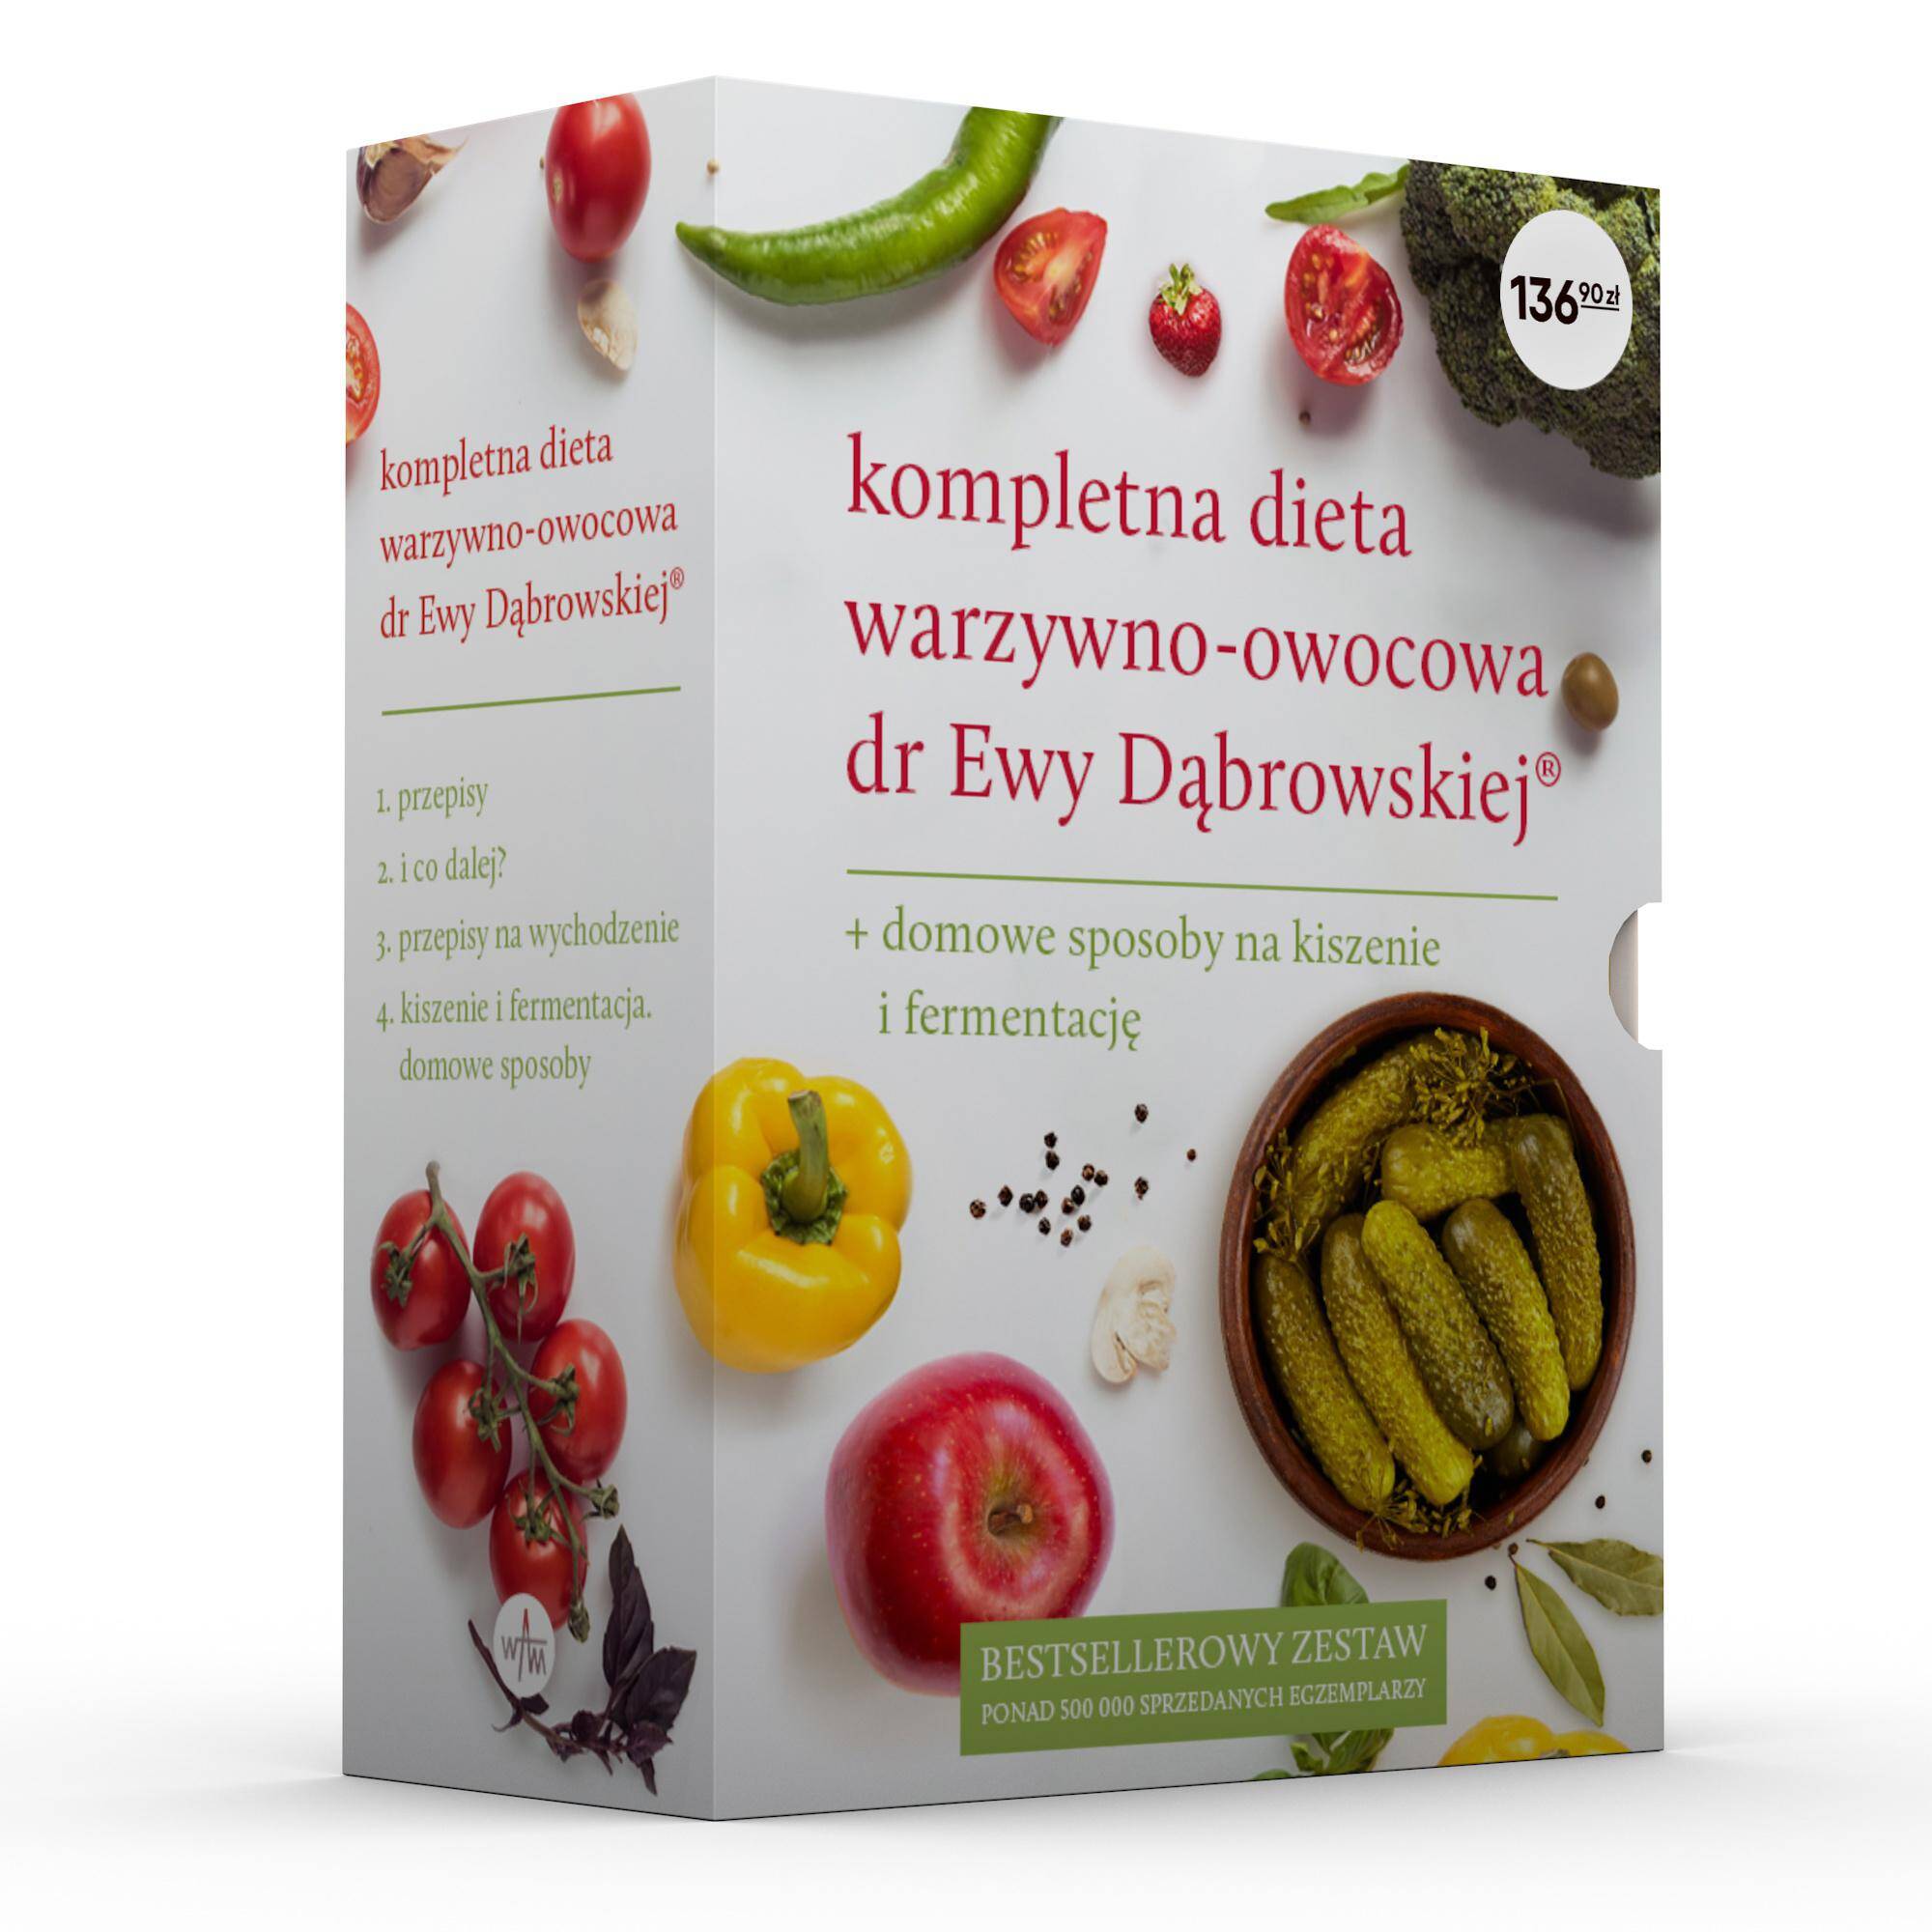 Pakiet Kompletna dieta warzywno-owocowa dr Ewy Dąbrowskiej / Domowe sposoby na kiszenie i fermentację